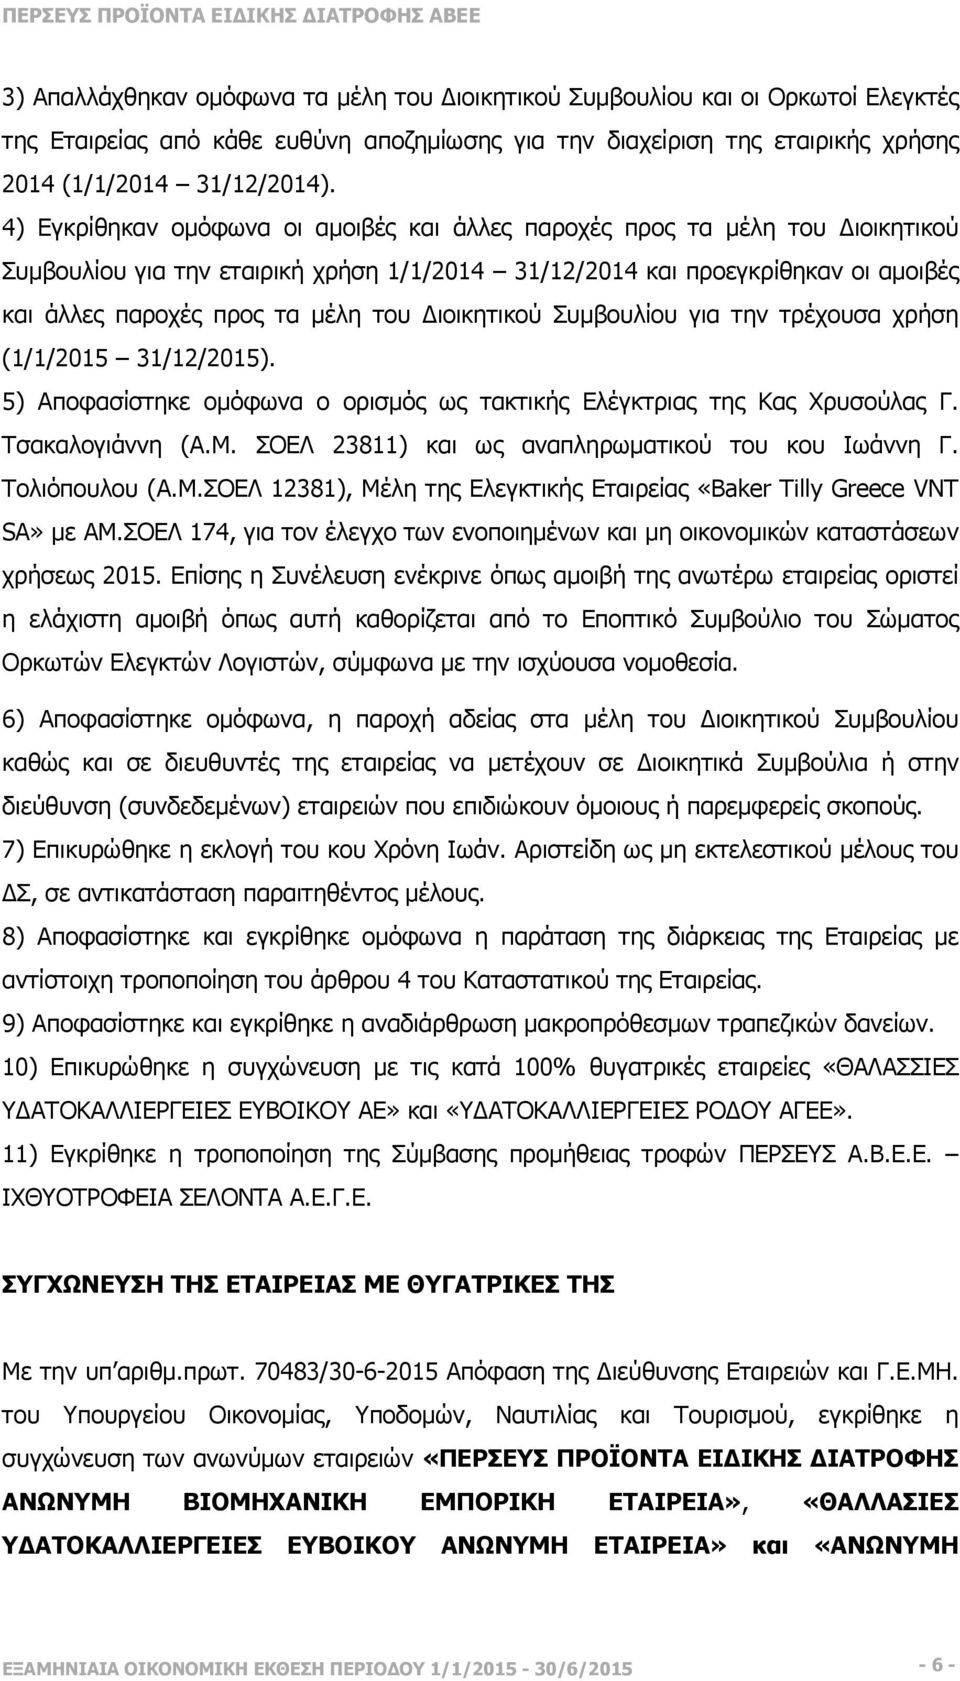 ιοικητικού Συµβουλίου για την τρέχουσα χρήση (1/1/2015 31/12/2015). 5) Αποφασίστηκε οµόφωνα ο ορισµός ως τακτικής Ελέγκτριας της Κας Χρυσούλας Γ. Τσακαλογιάννη (Α.Μ.